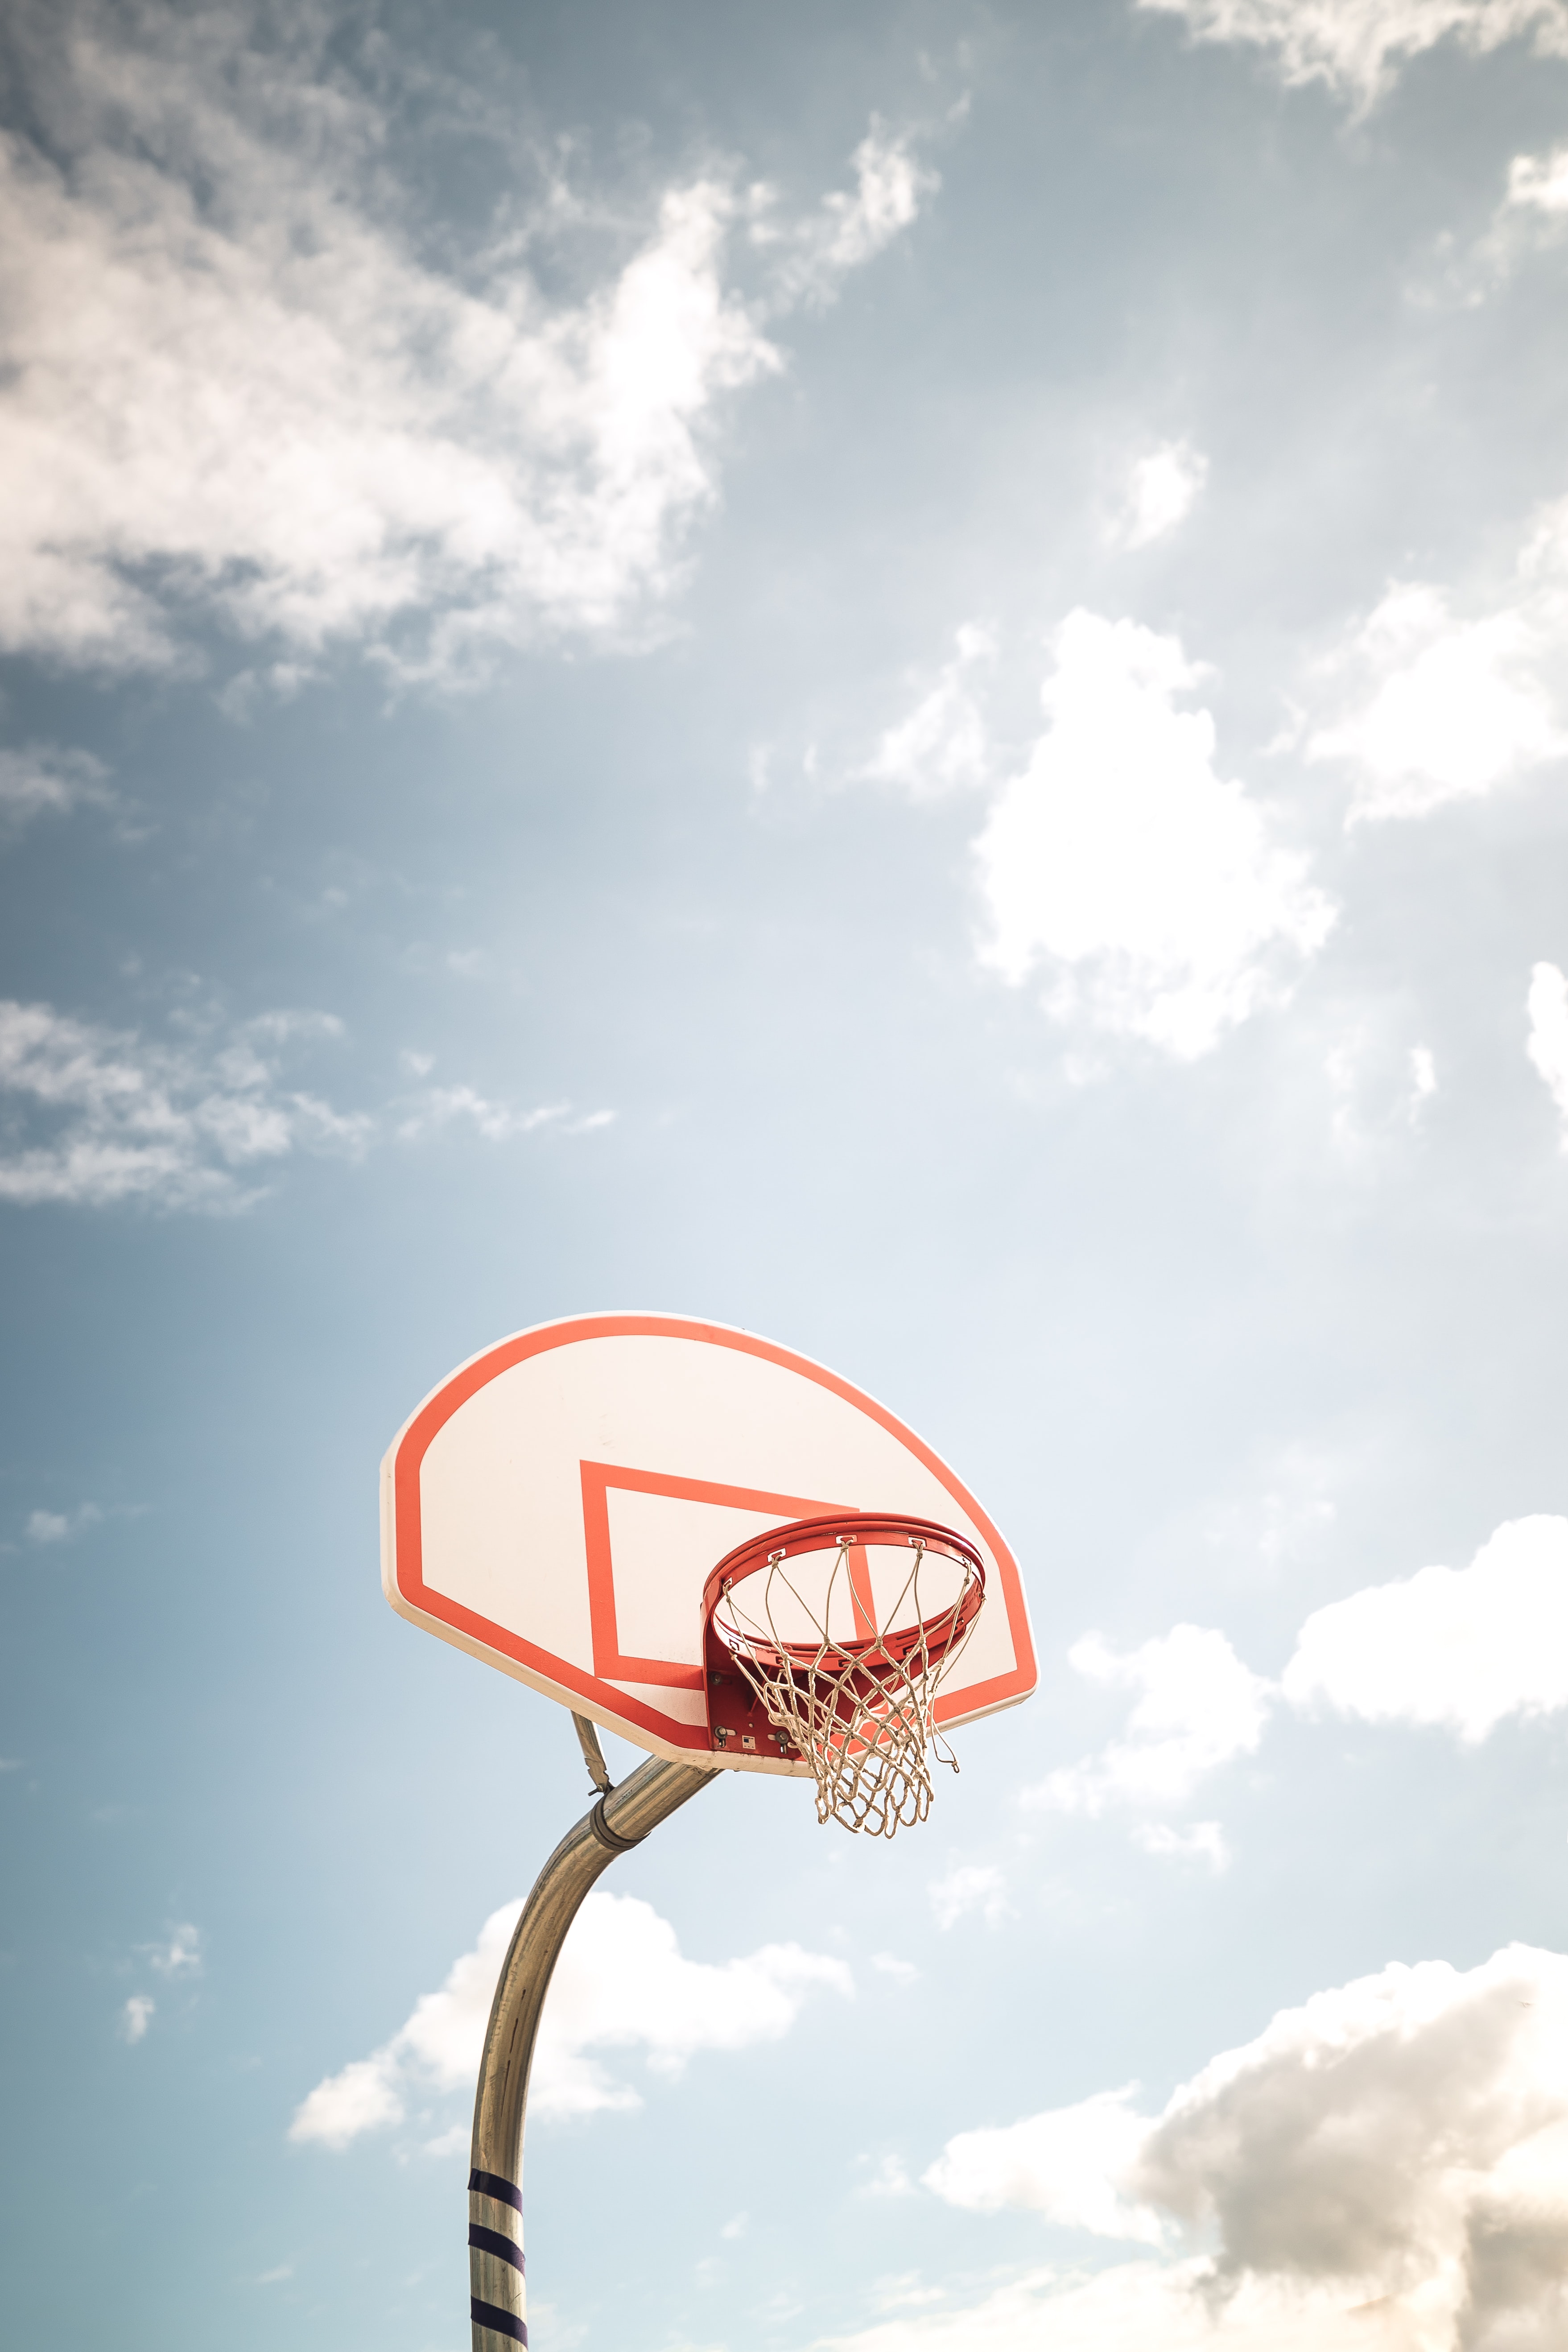 basketball, basketball backboard, basketball shield, basketball ring, sports, sky, basketball hoop